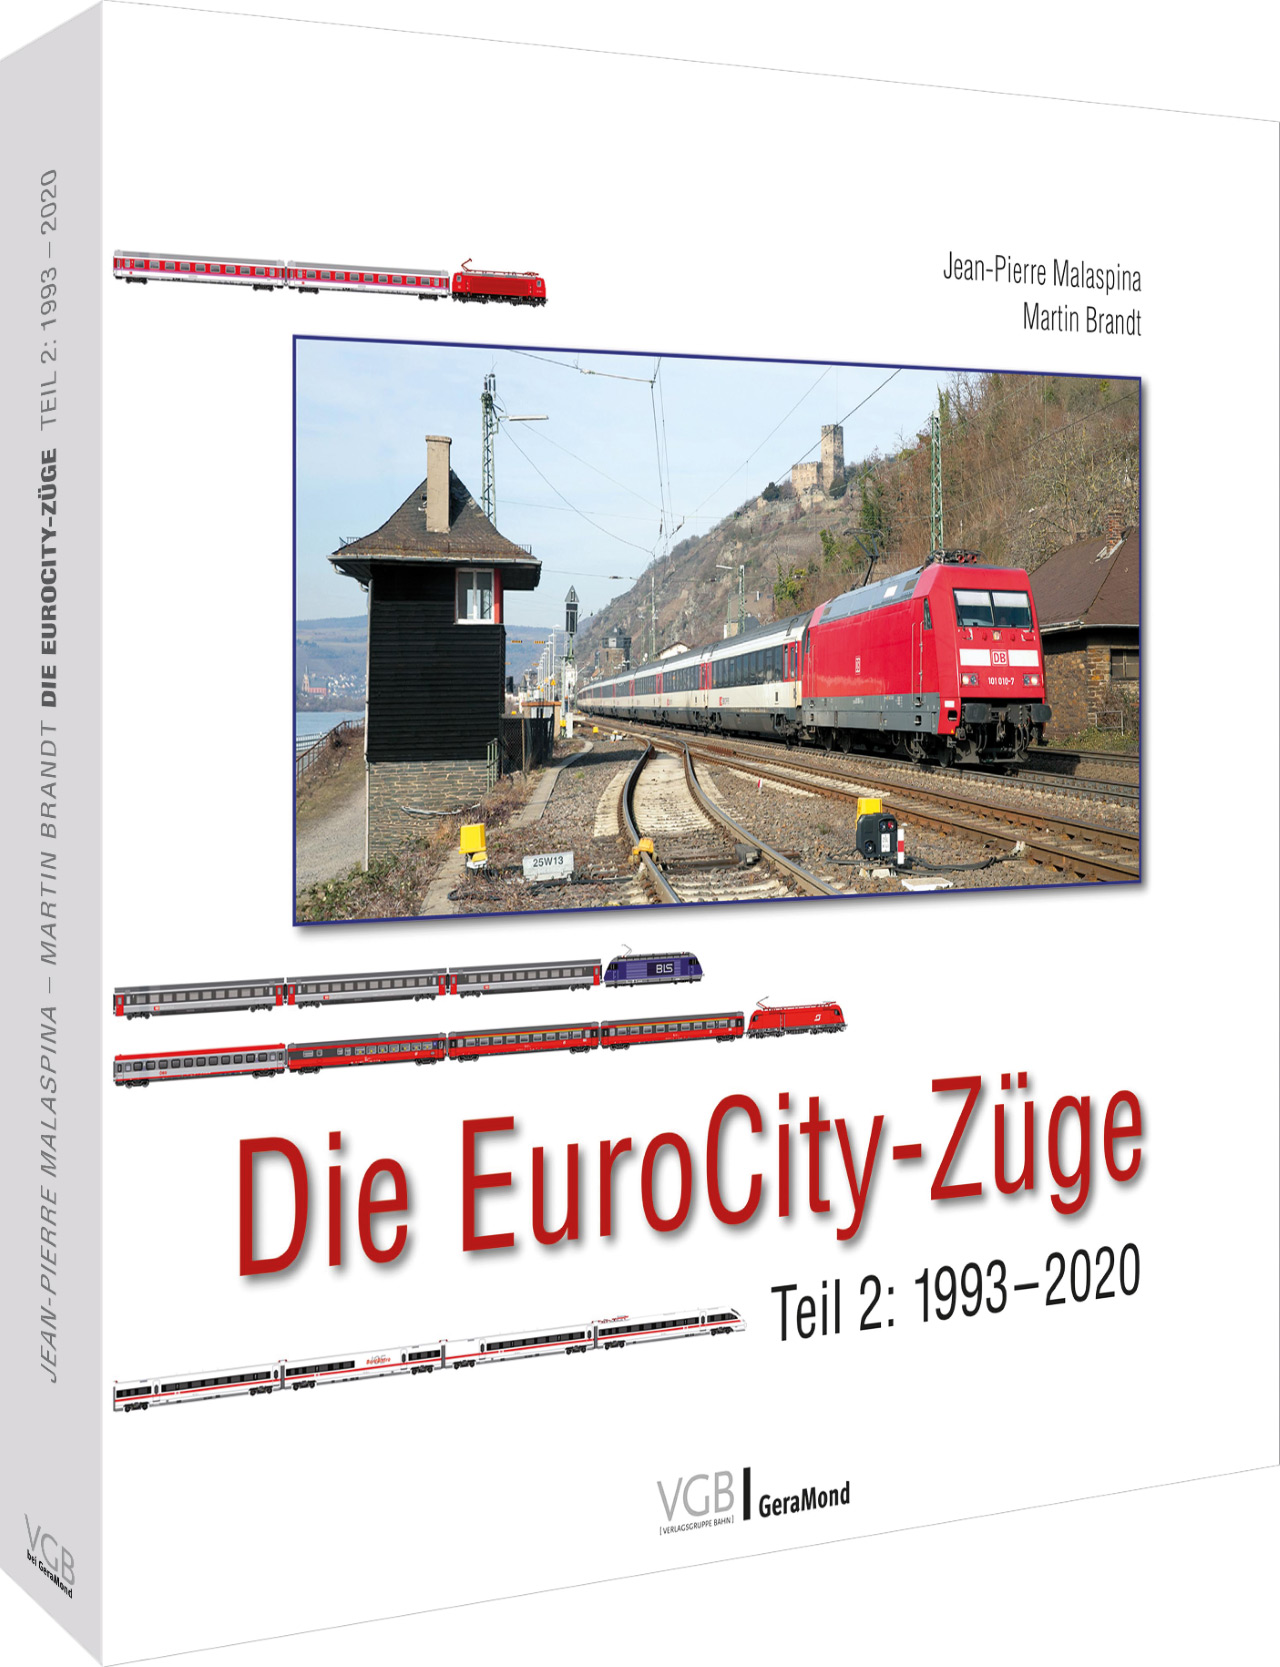 Die EuroCity-Züge - Teil 2: 1993-2020